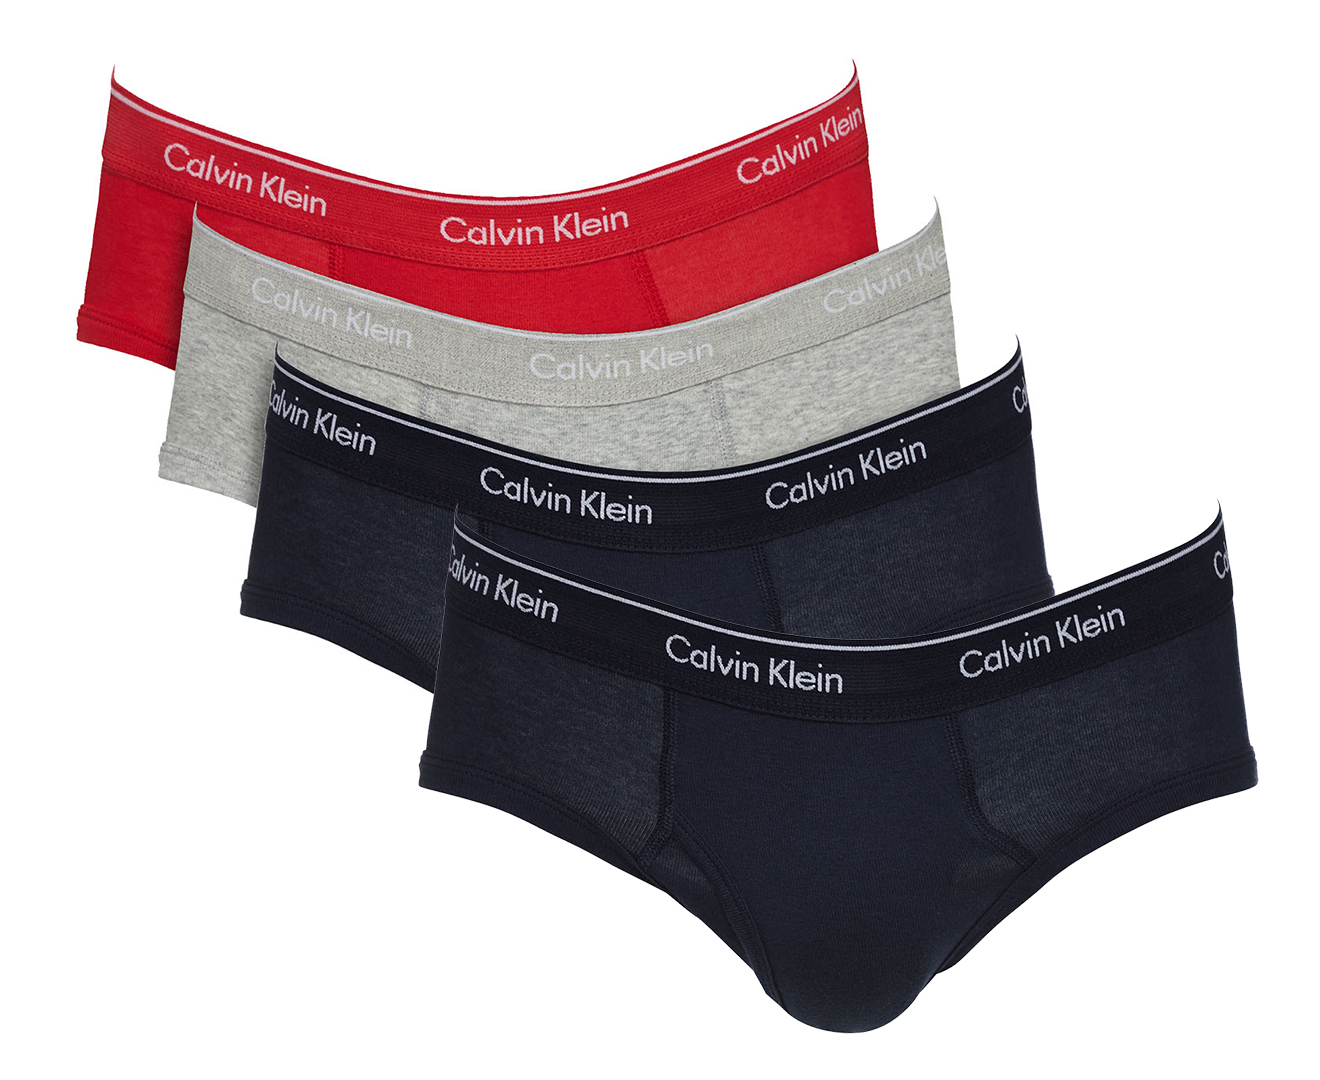 Calvin Klein Men's Cotton Classics Low Rise Hip Briefs 4-Pack ...